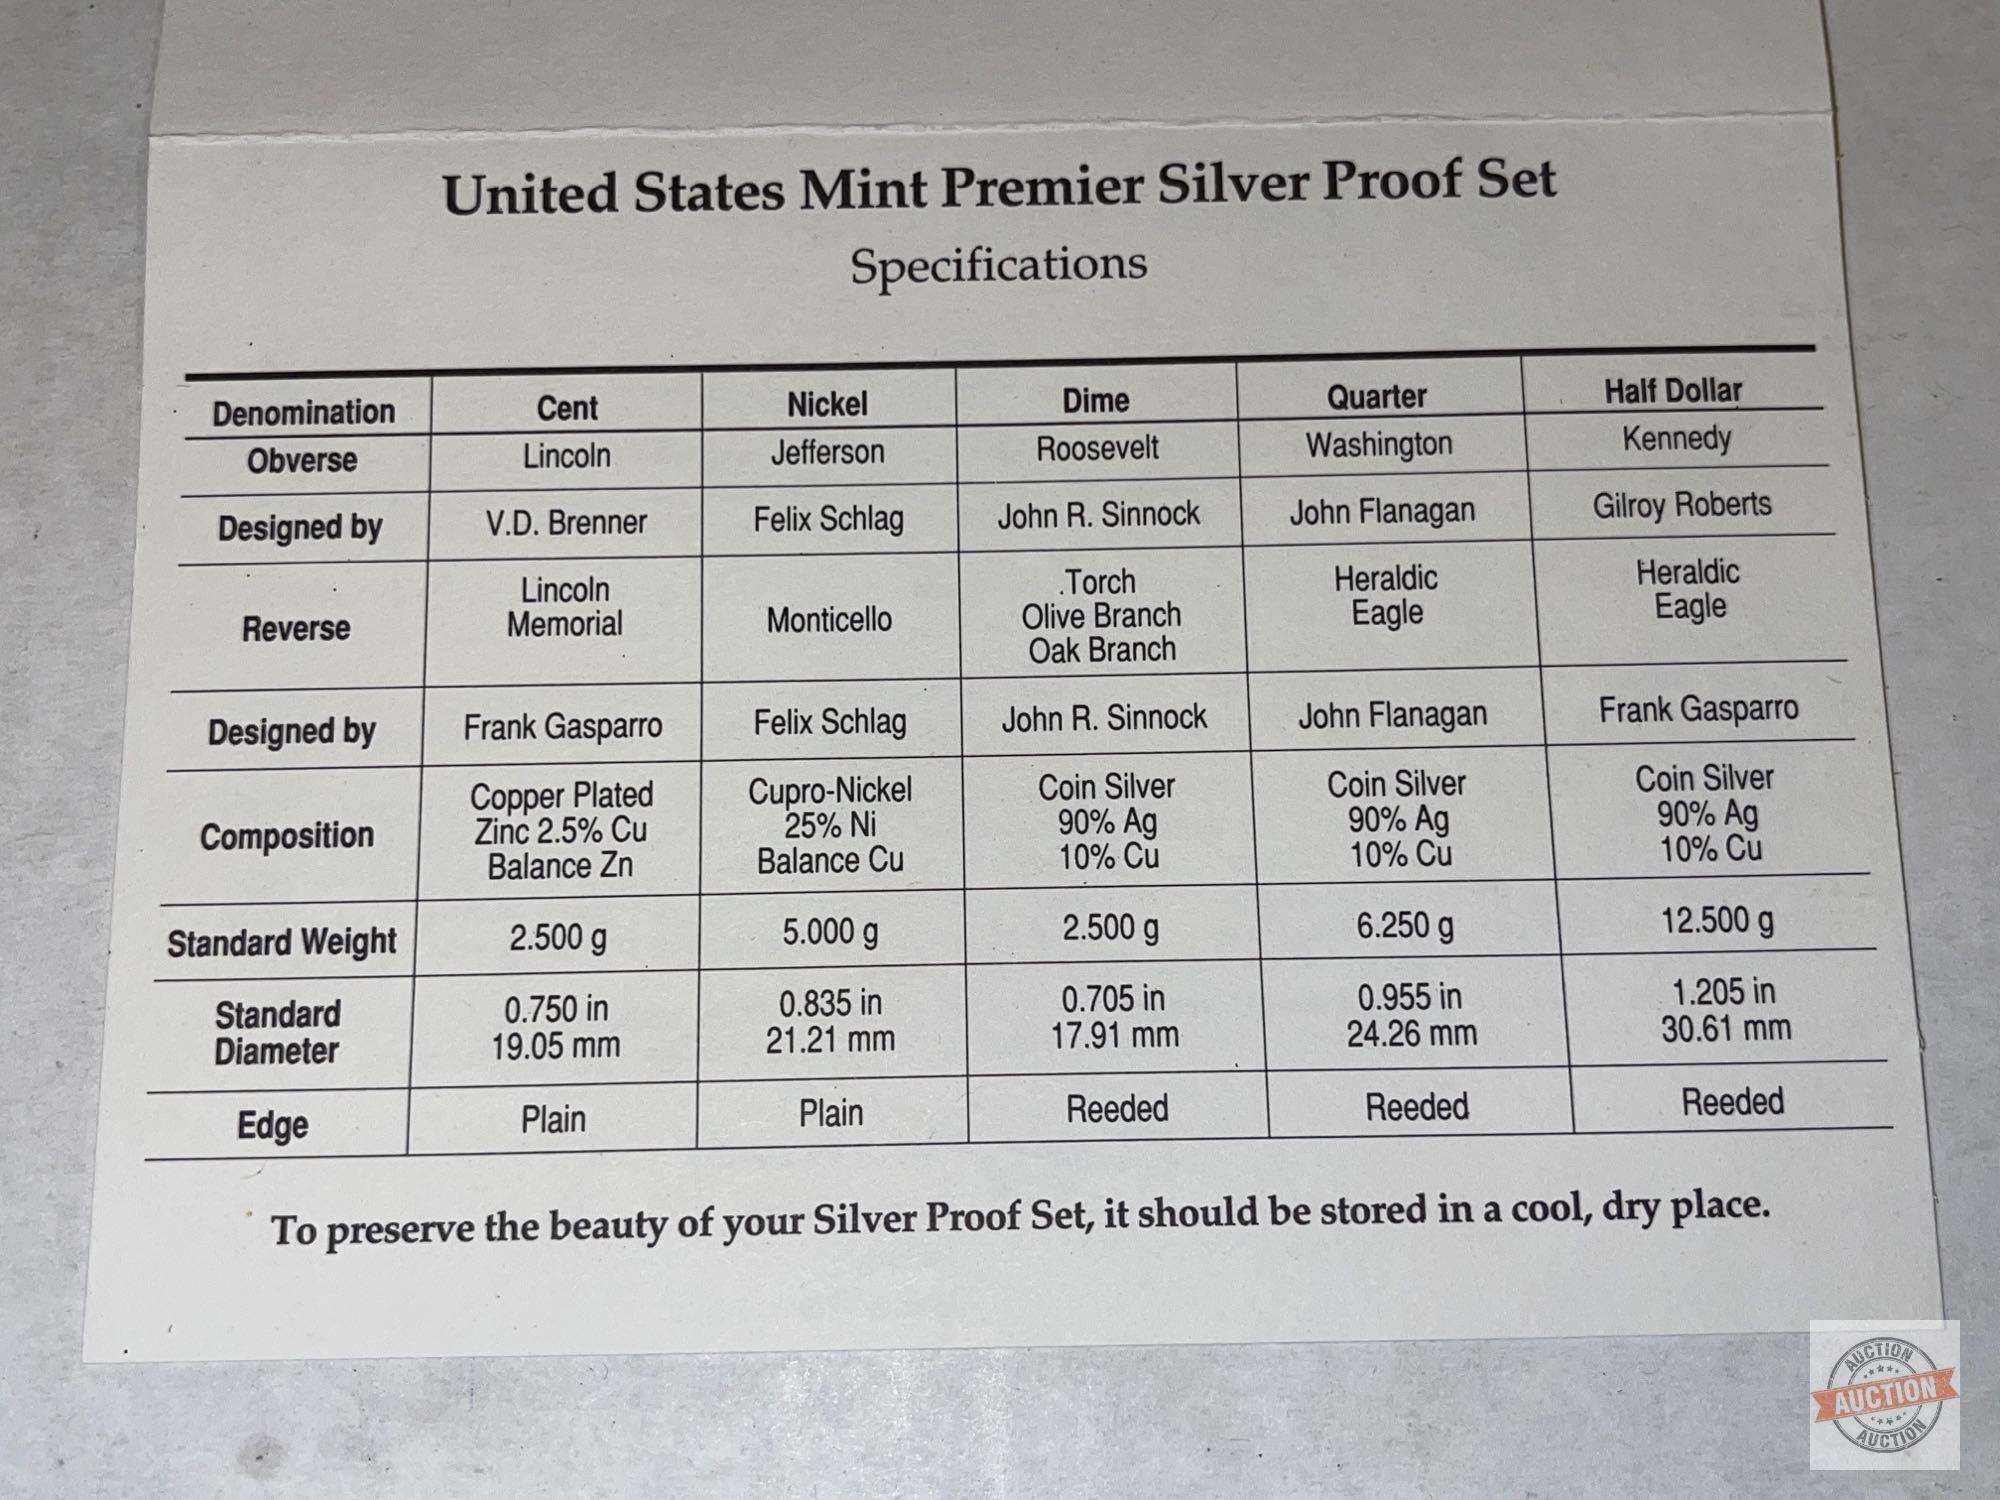 Silver Premier Proof Set - 1993s US Mint Premier Silver Proof Set Uncirculated